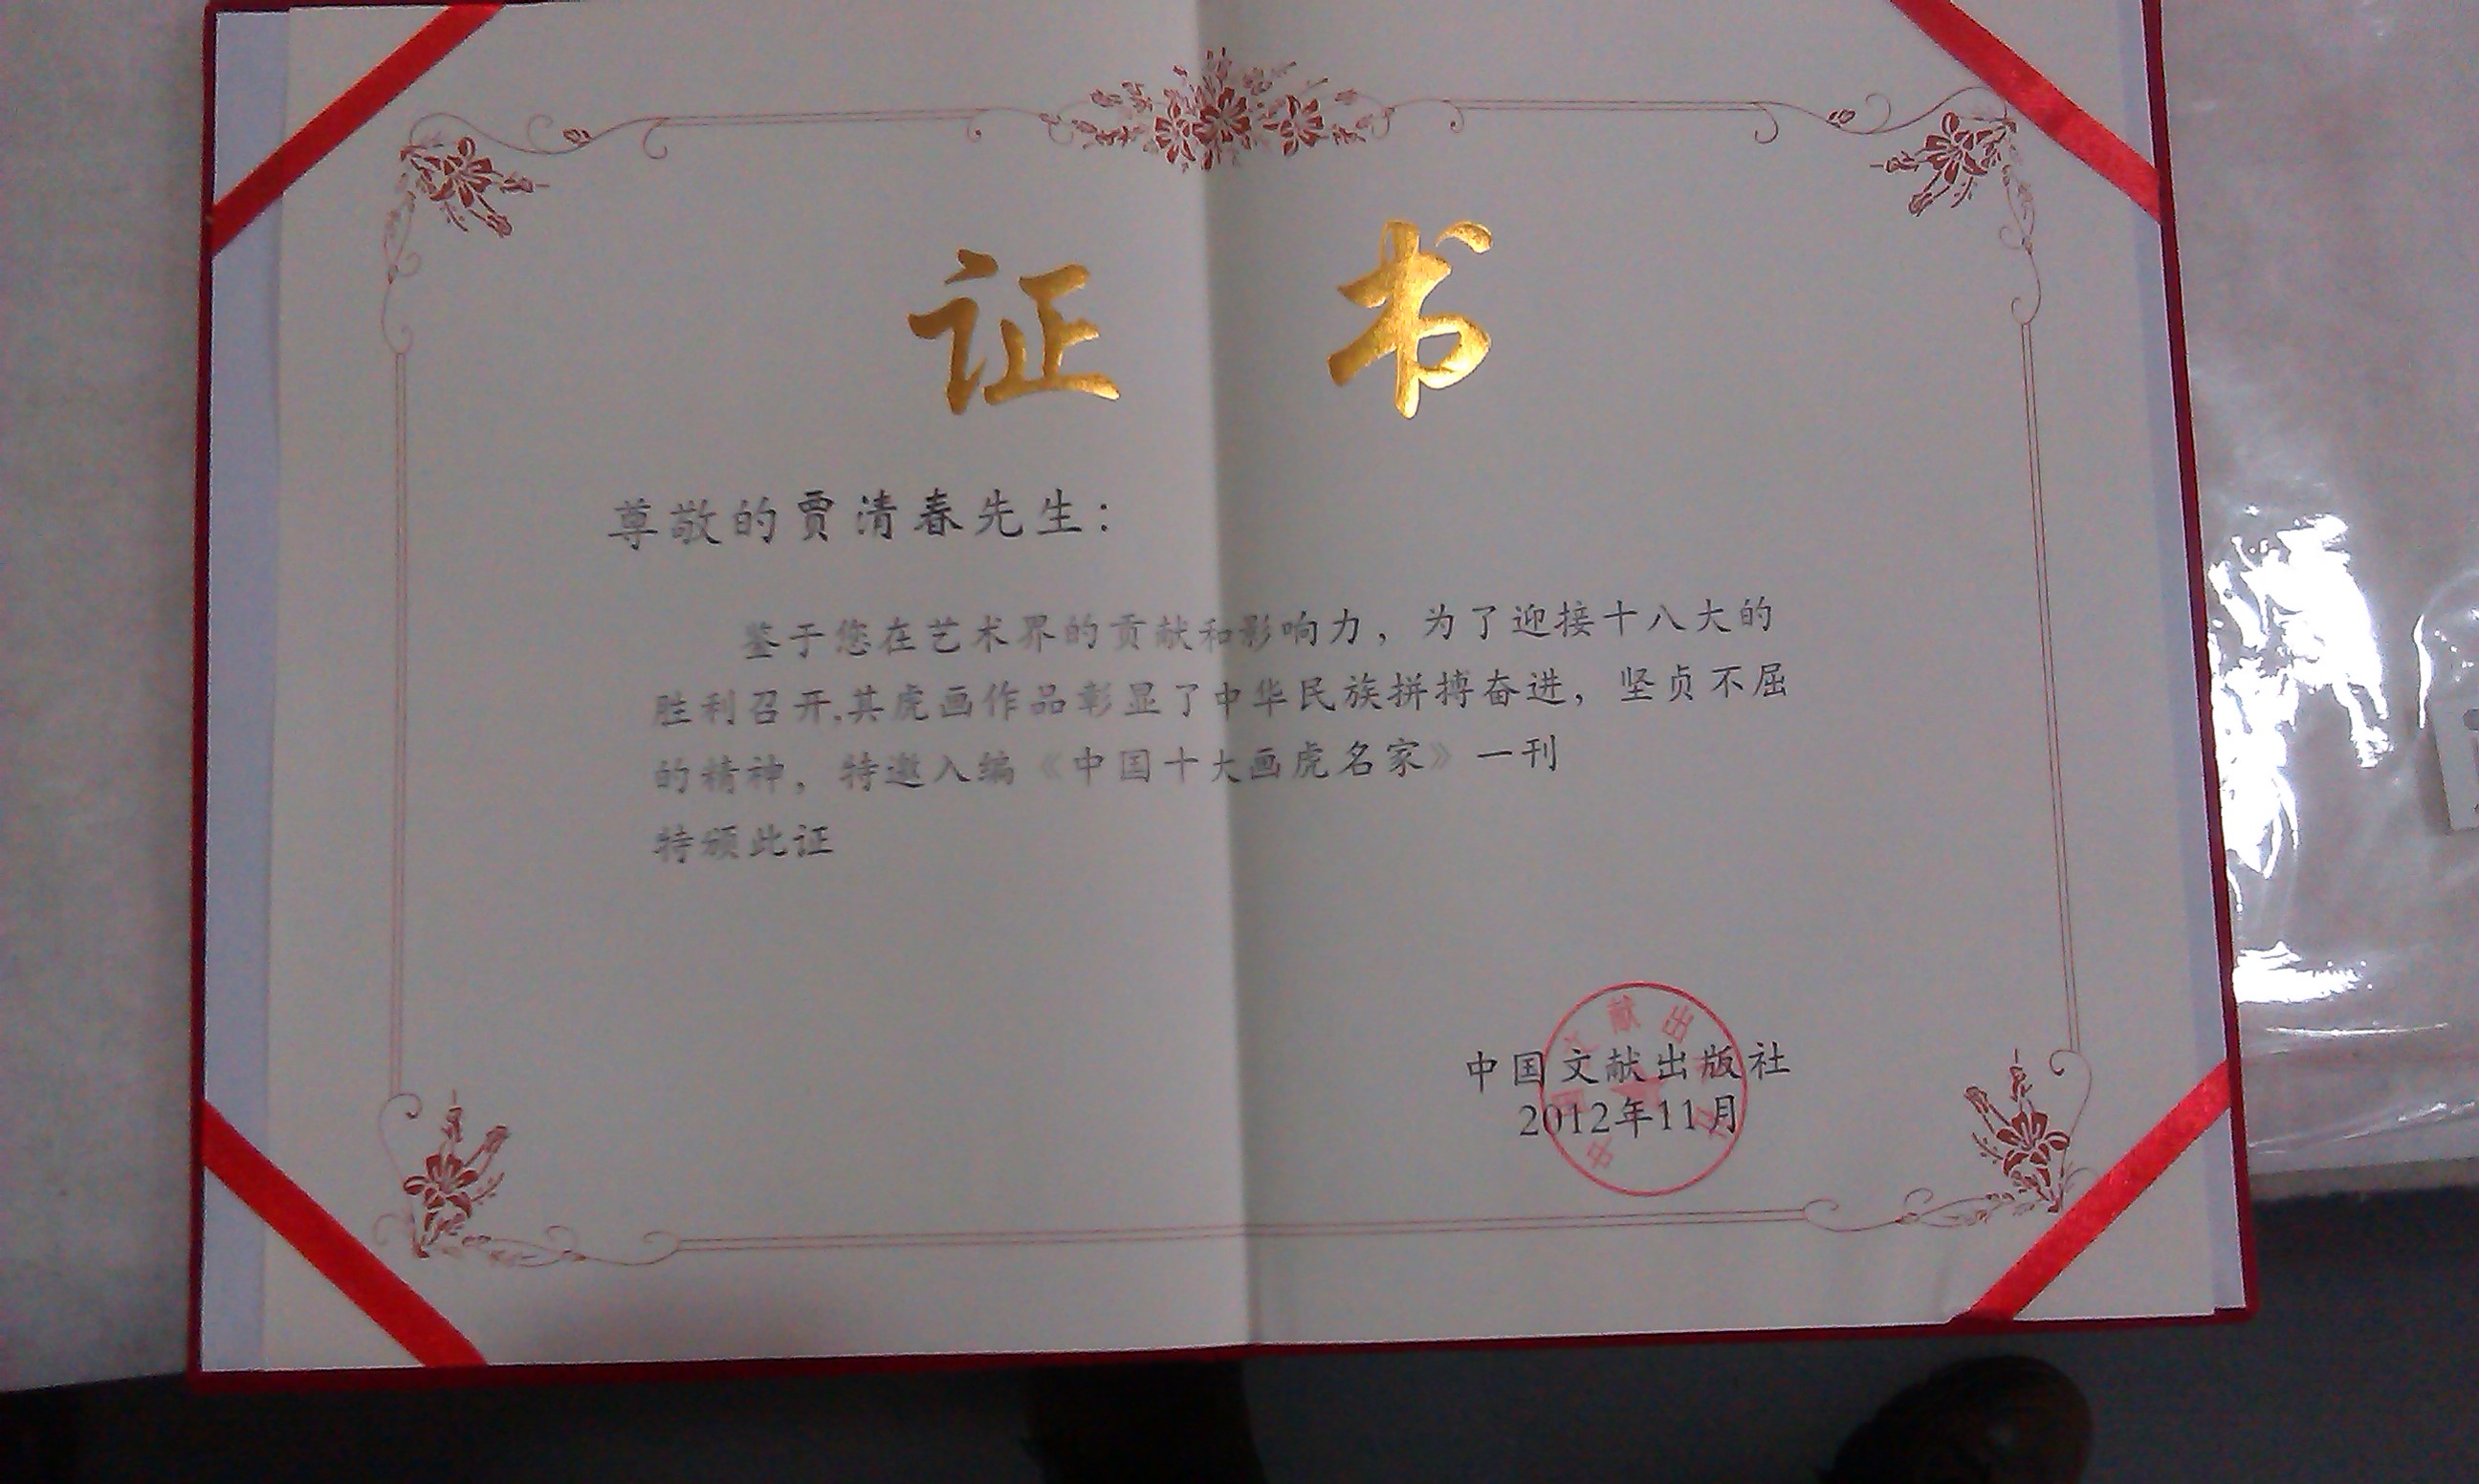 賈清春老師被譽為”中國十大畫虎名家“